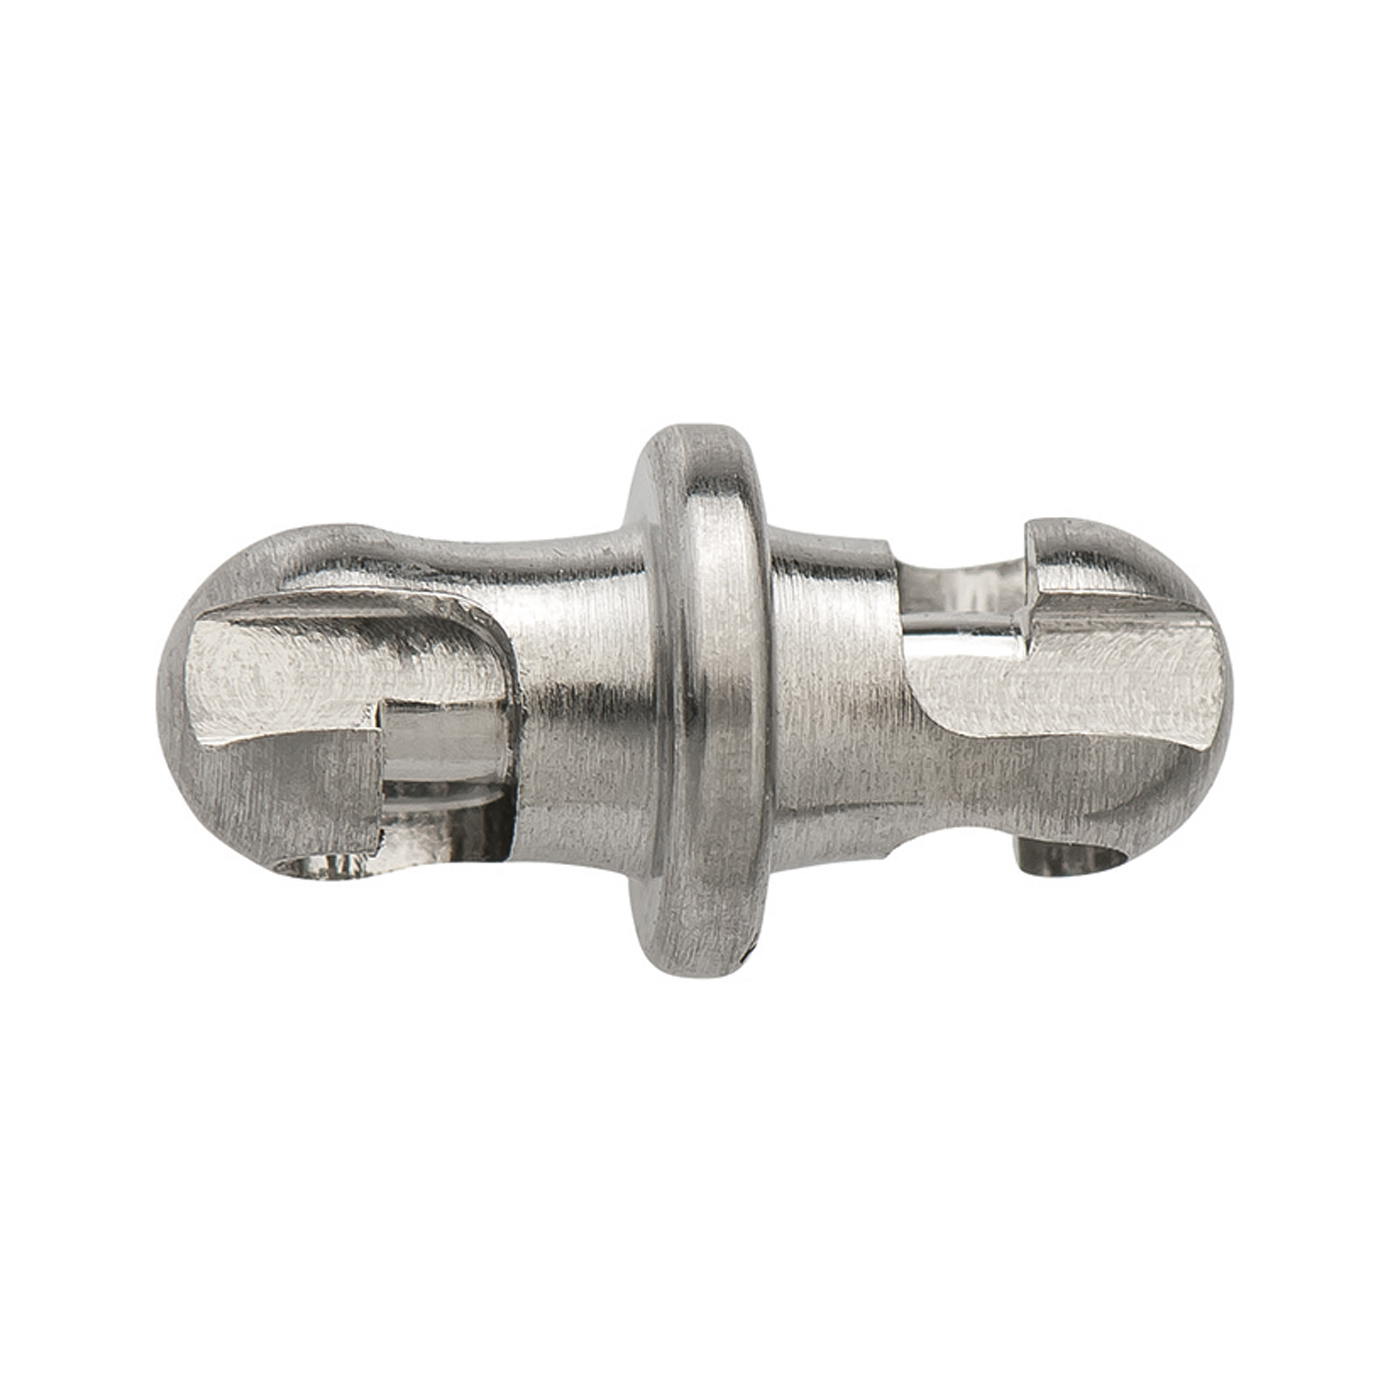 Adapterschlüssel, ES rhod., ø 4 mm, für Kugelkopf-Mechanik - 1 Stück